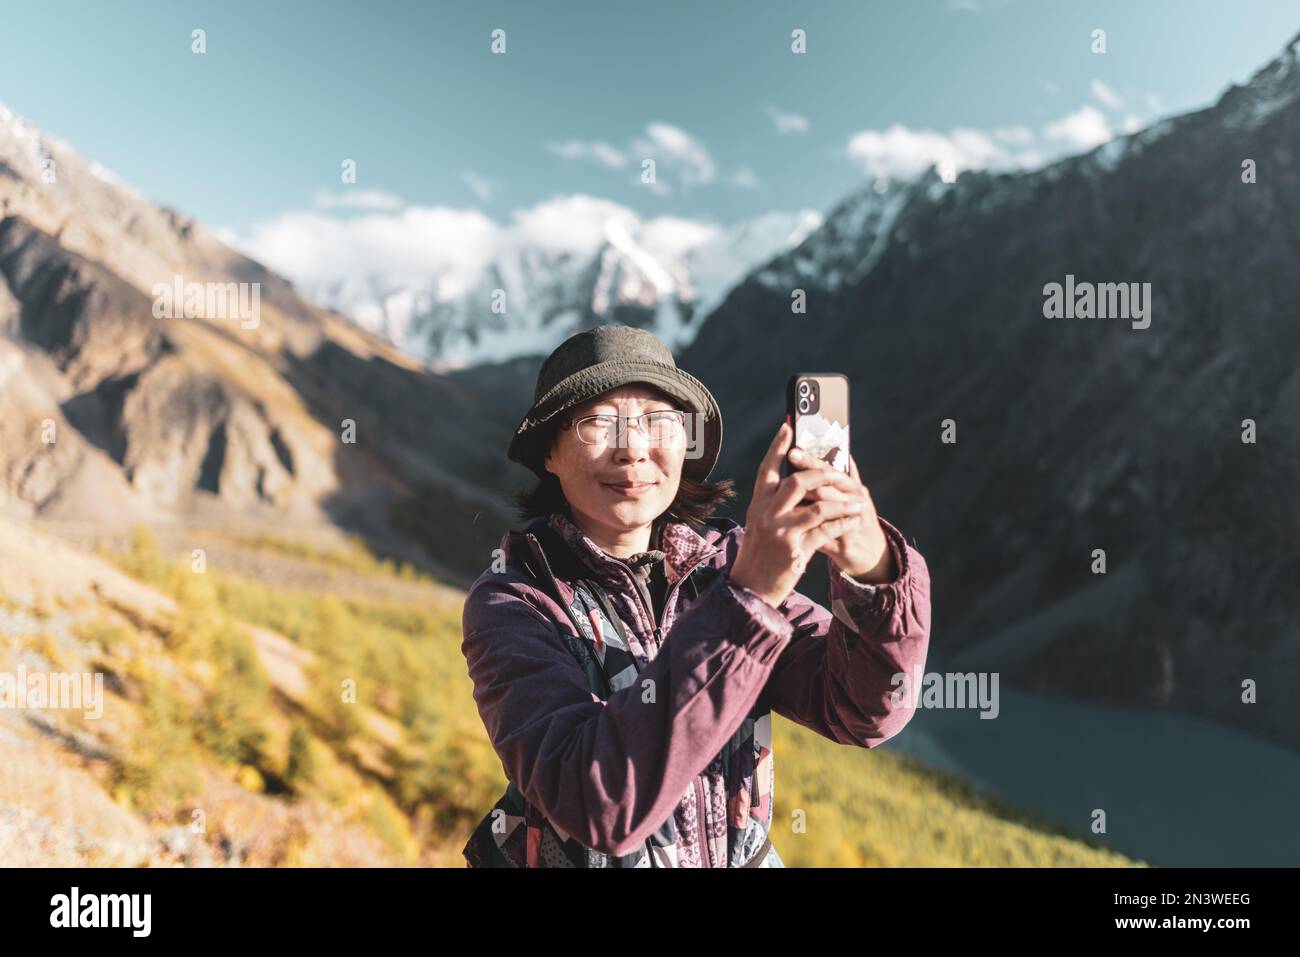 Ein asiatisches Mädchen mit Brille und Hut macht ein Selfie vor dem Hintergrund von Gletschern und schneebedeckten Bergen in der Nähe eines Sees in Altai. Stockfoto